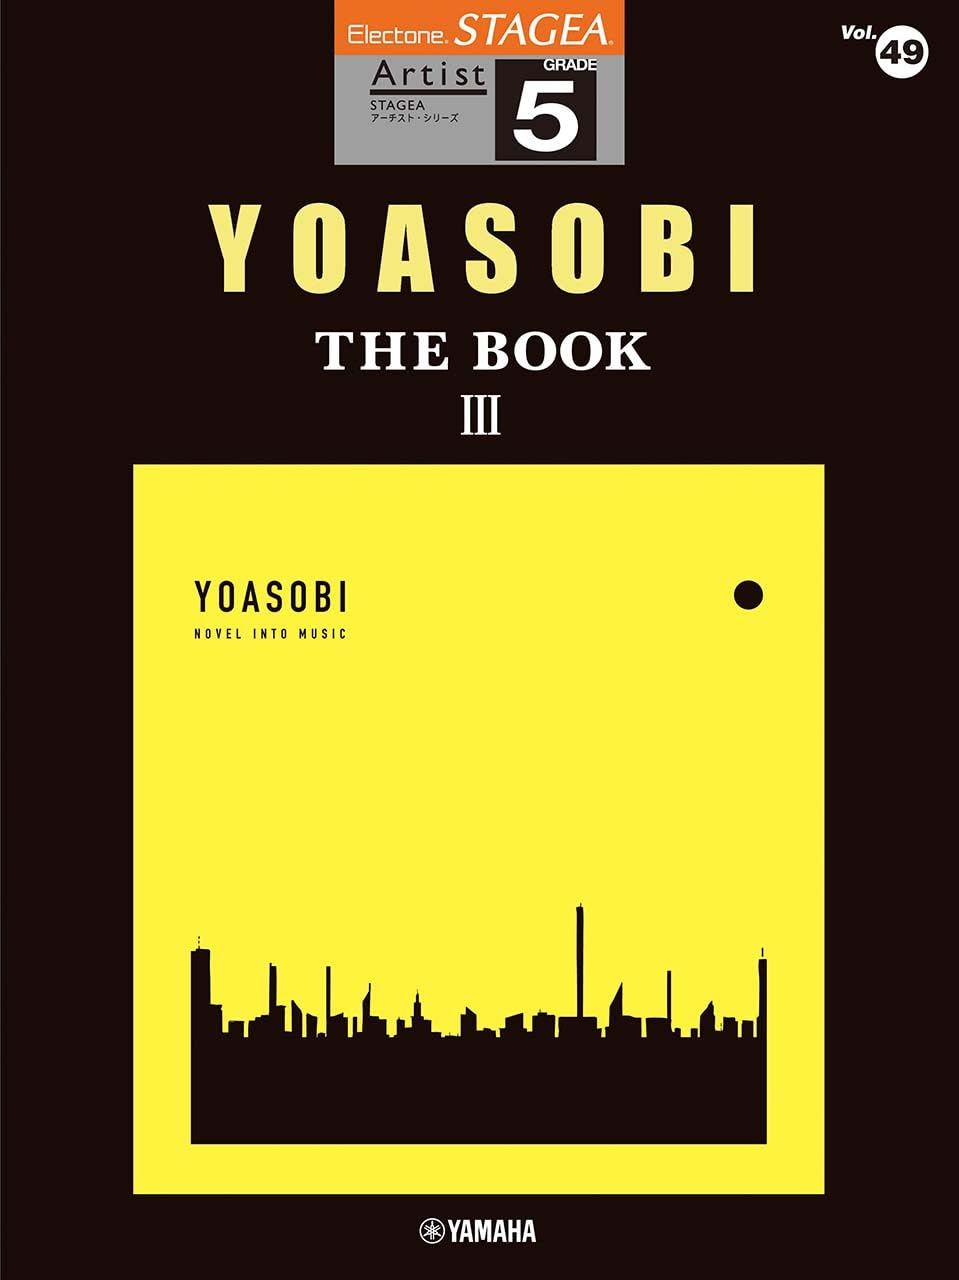 Stagea Artist Grade 5 Vol.49 Yoasobi The Book 3 - Bitcoin